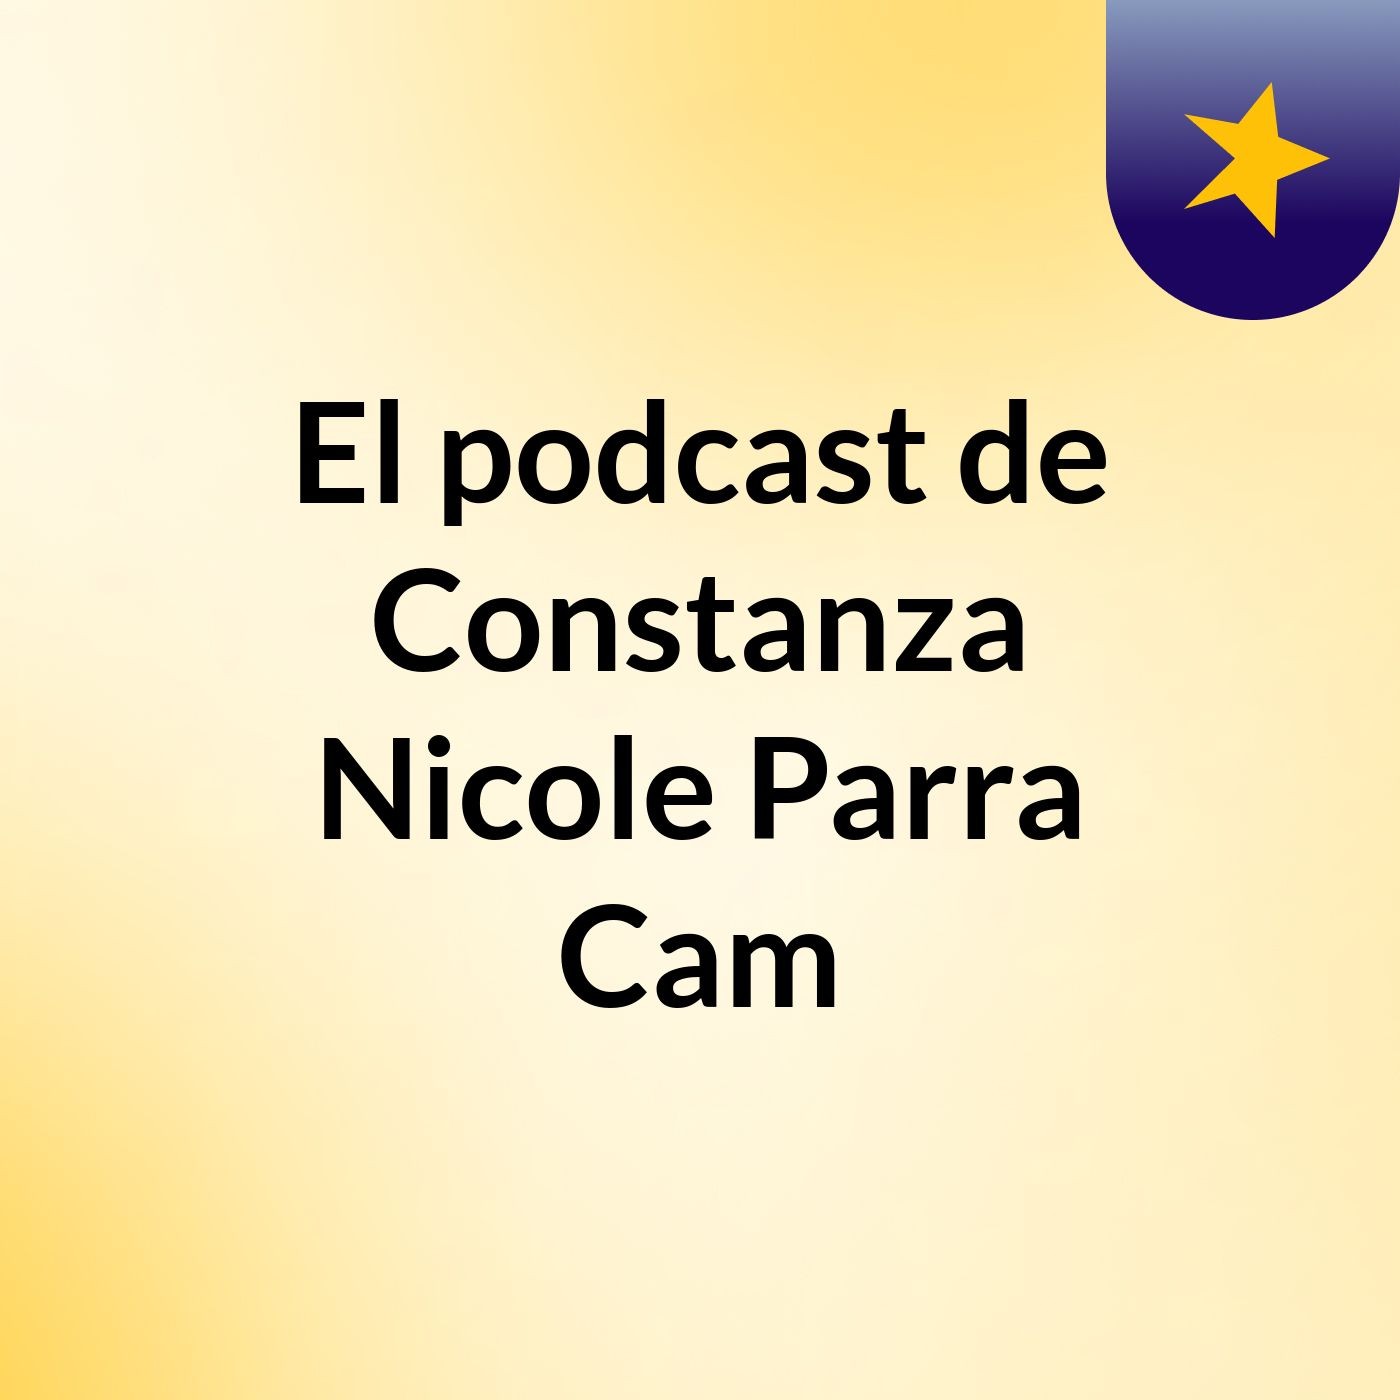 El podcast de Constanza Nicole Parra Cam